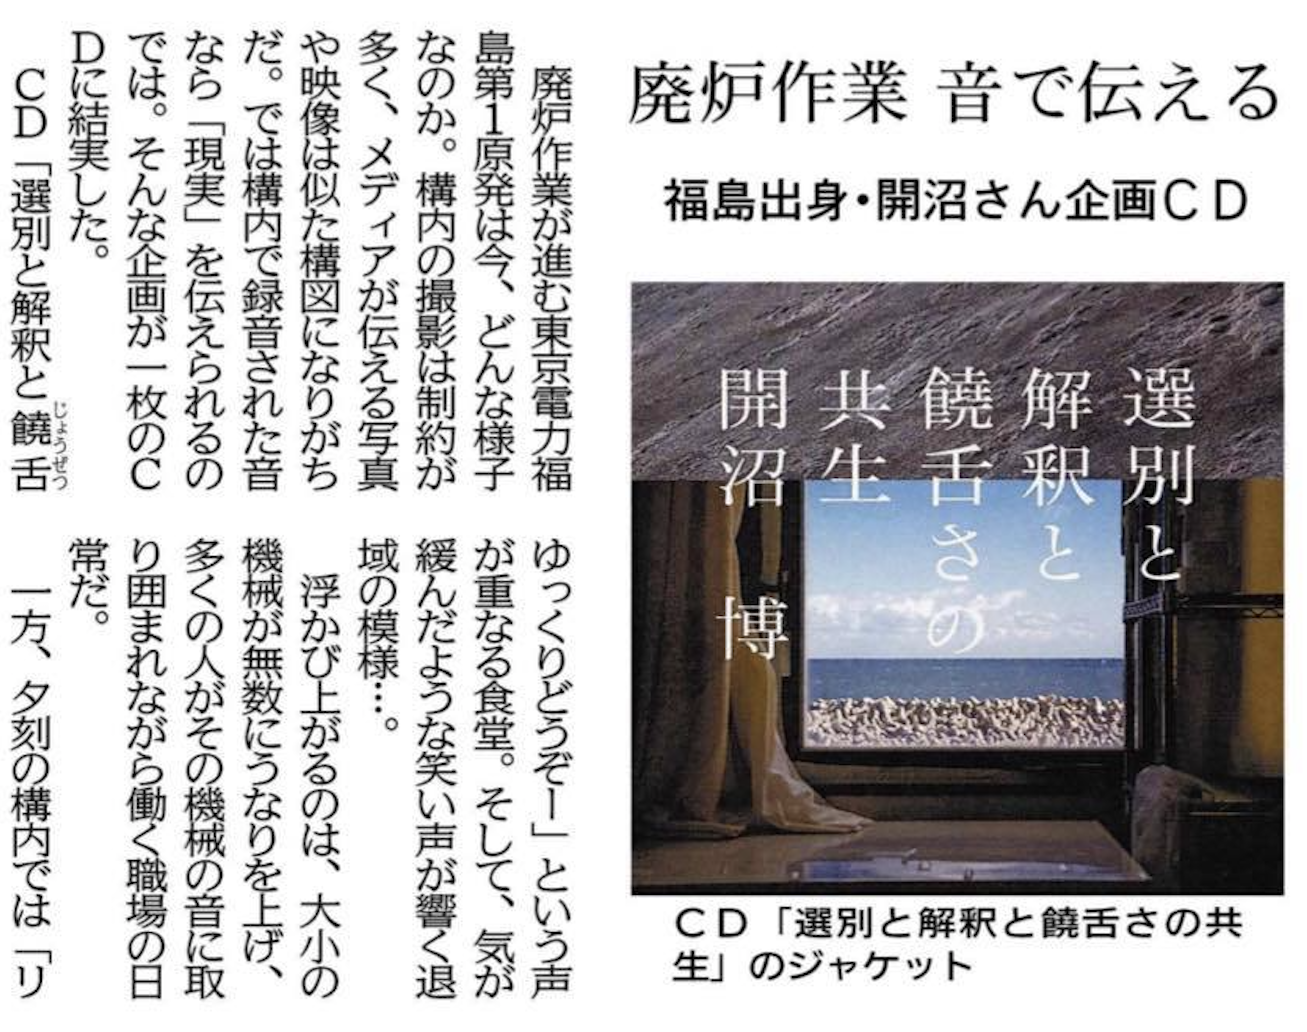 南日本新聞 他に共同通信配信記事を掲載いただきました。